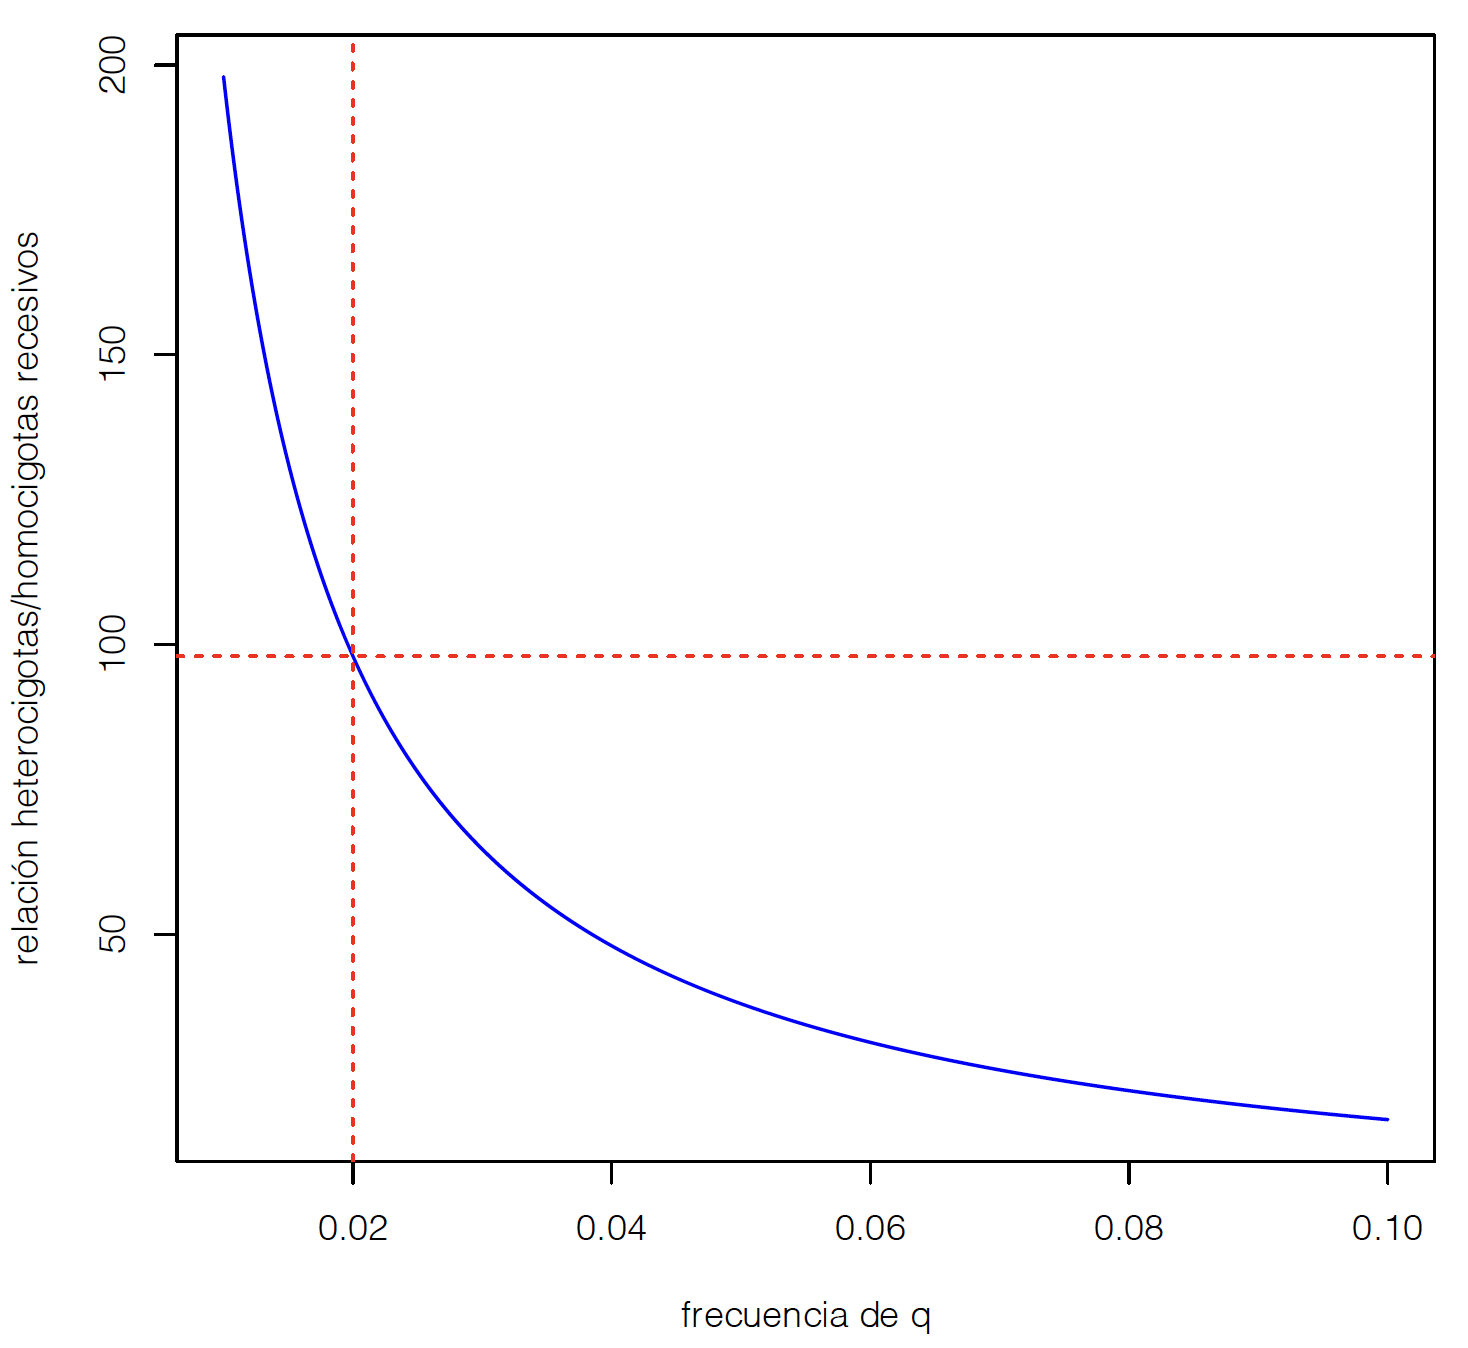 Relación del número de heterocigotas a homocigotas recesivos en función de la frecuencia del alelo $q$ en un modelo de un locus con dos alelos, bajo equilibrio Hardy-Weinberg.